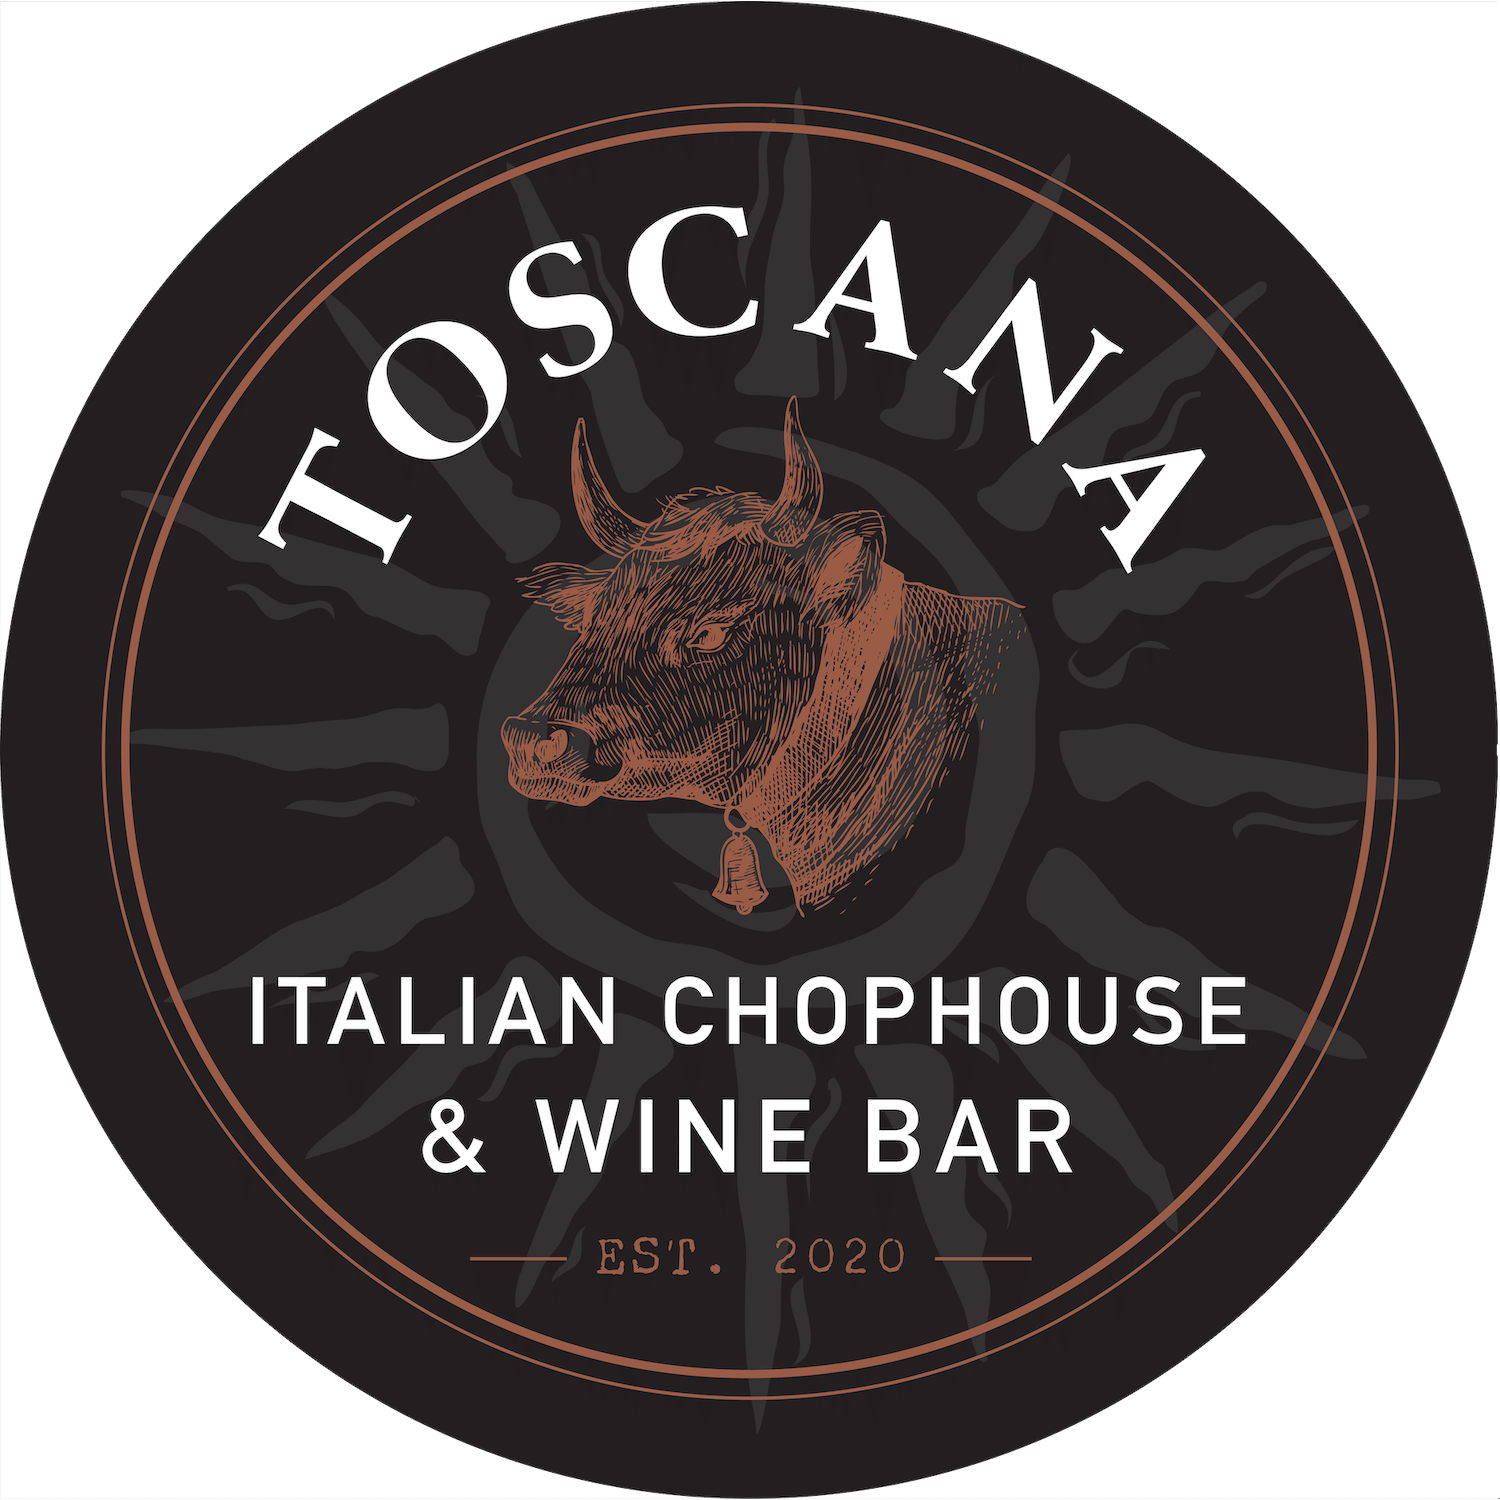 Toscana Italian Chophouse & Wine Bar